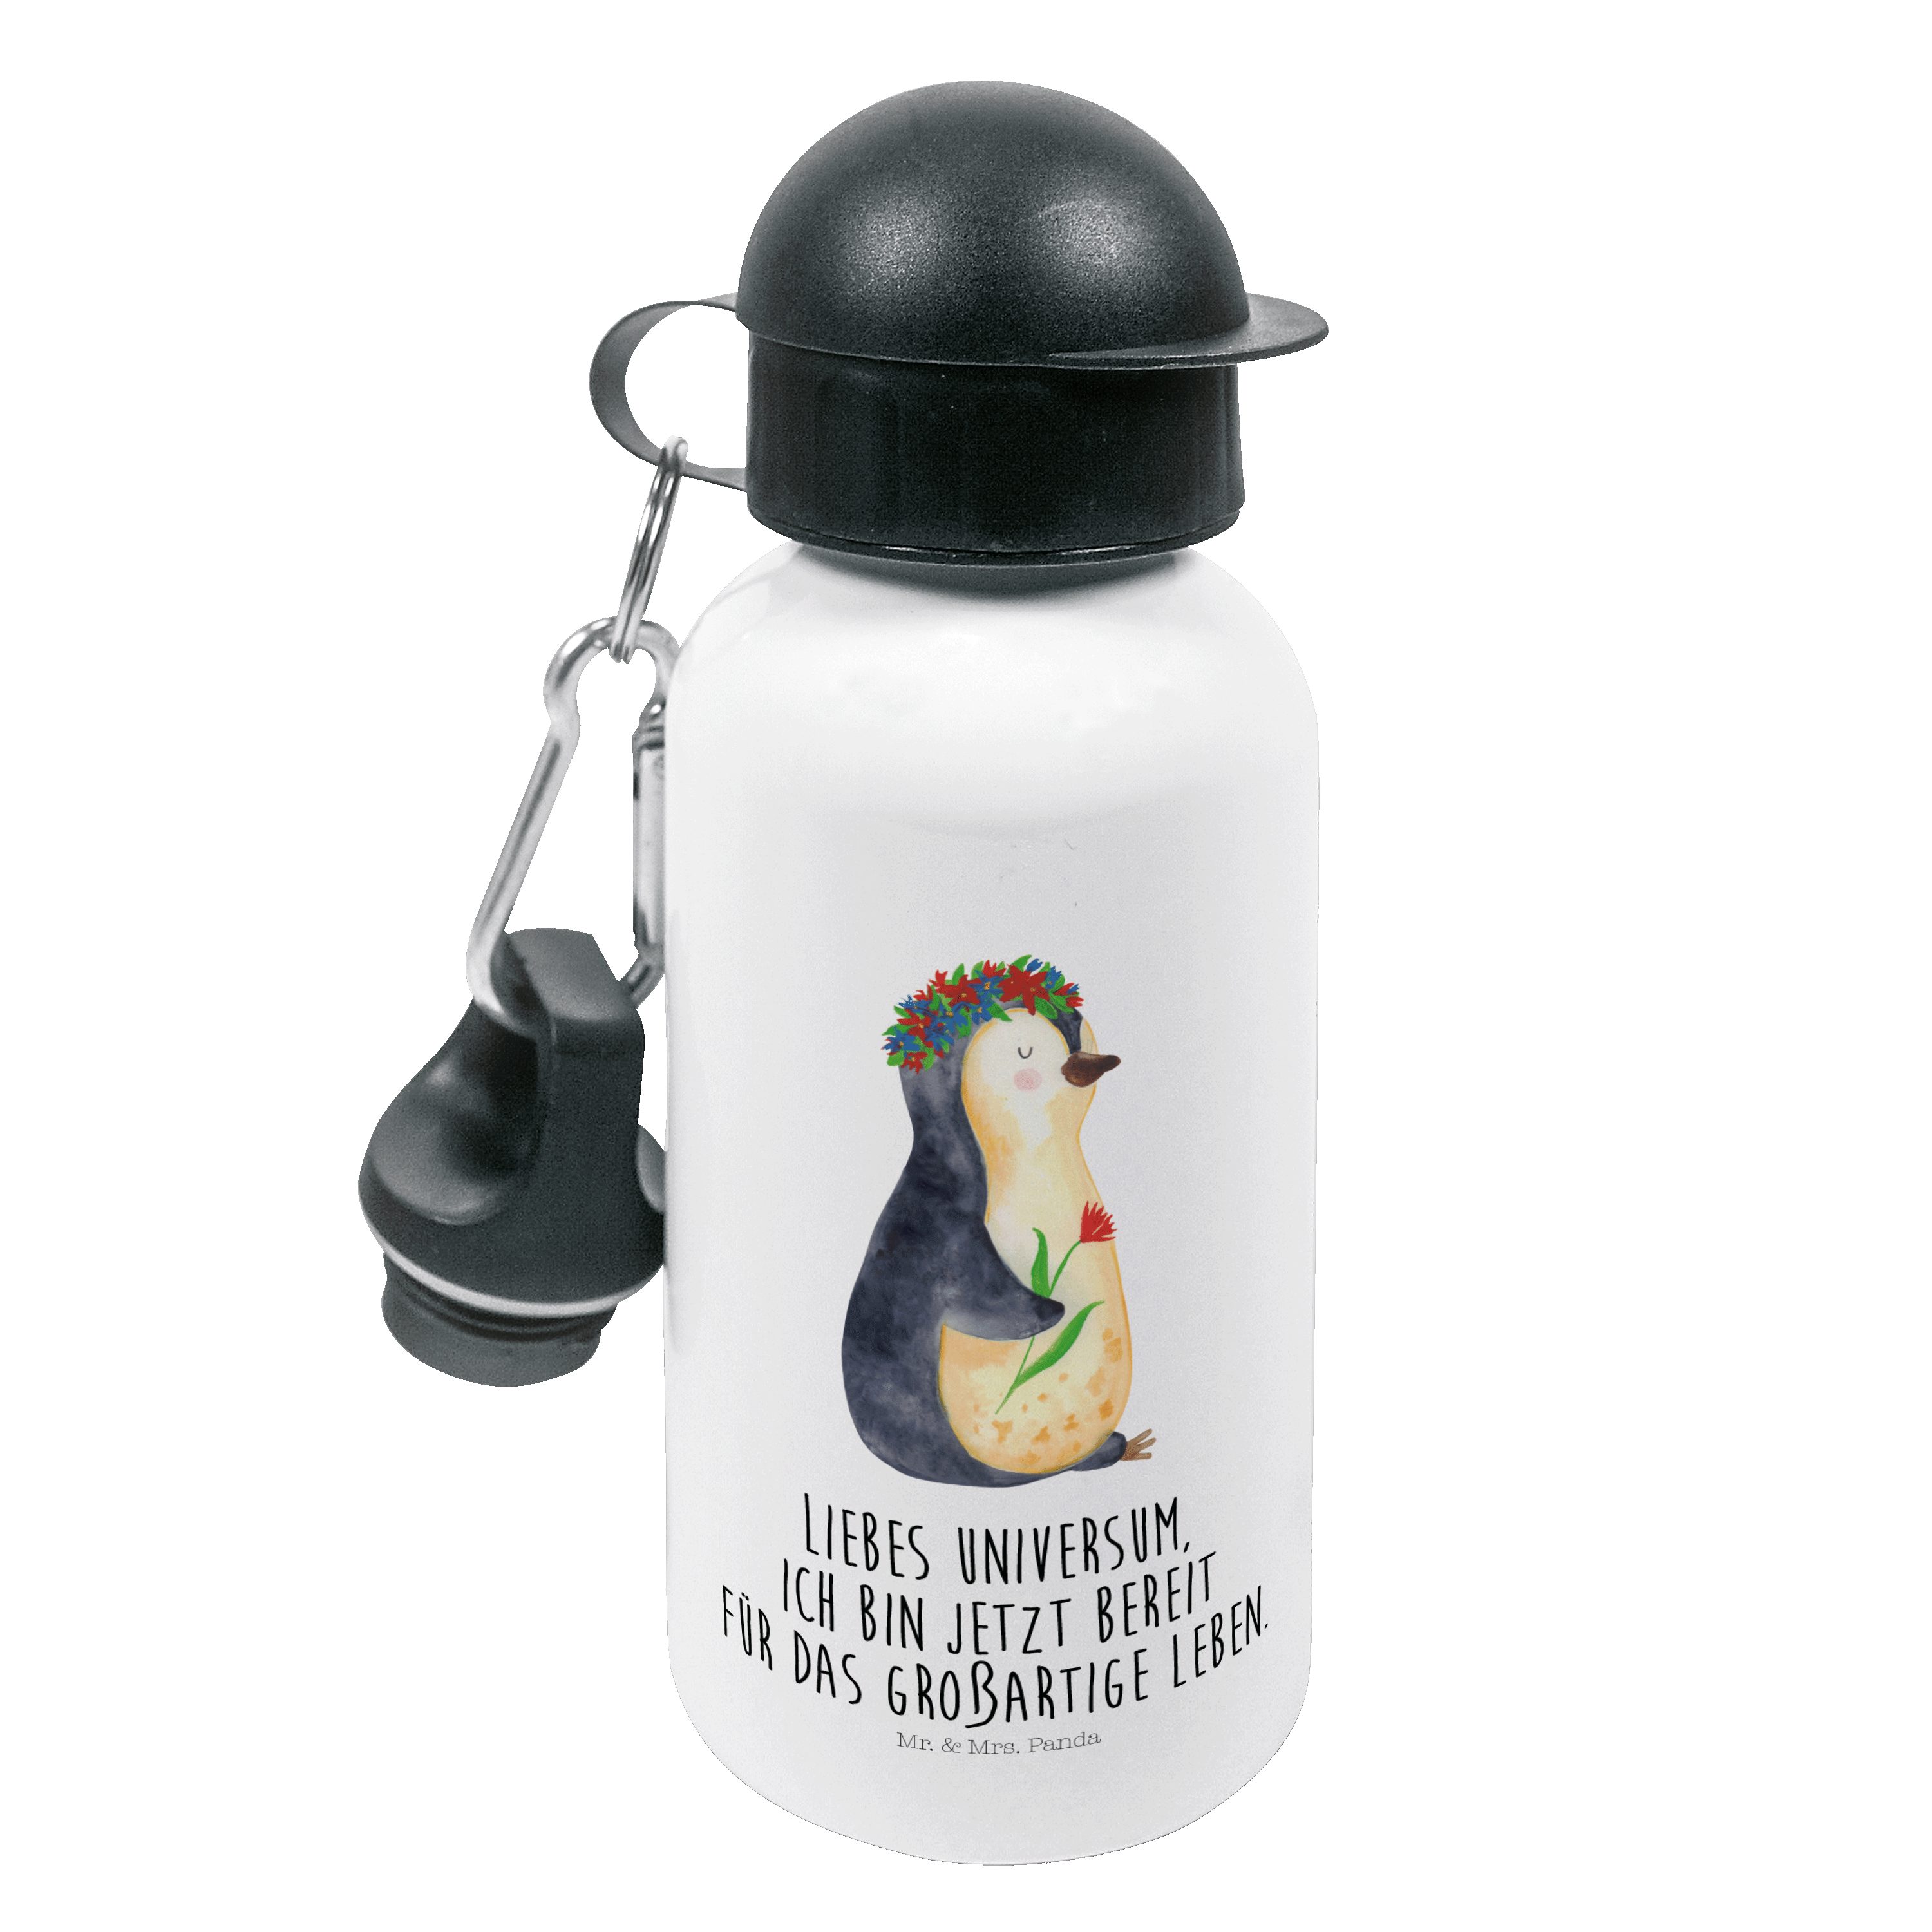 Mr. & Mrs. Panda Trinkflasche Pinguin Blumenkranz - Weiß - Geschenk, Kinderflasche, wunderschön, Ki